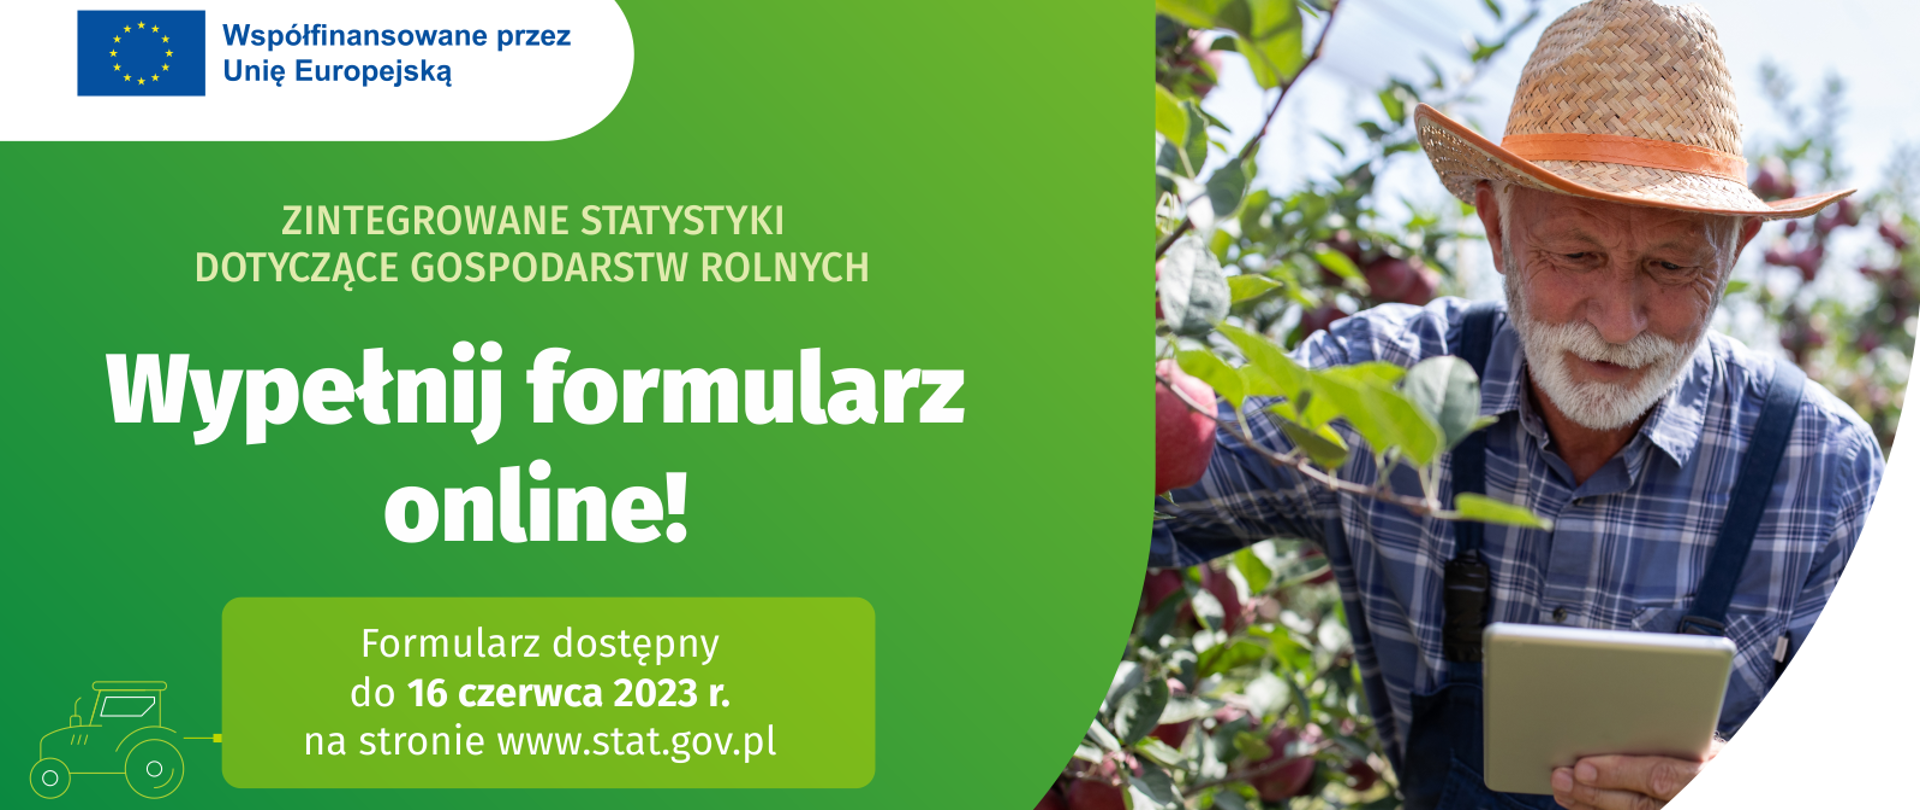 Ruszają ważne badania polskiego rolnictwa! Skorzystaj z formularza on-line